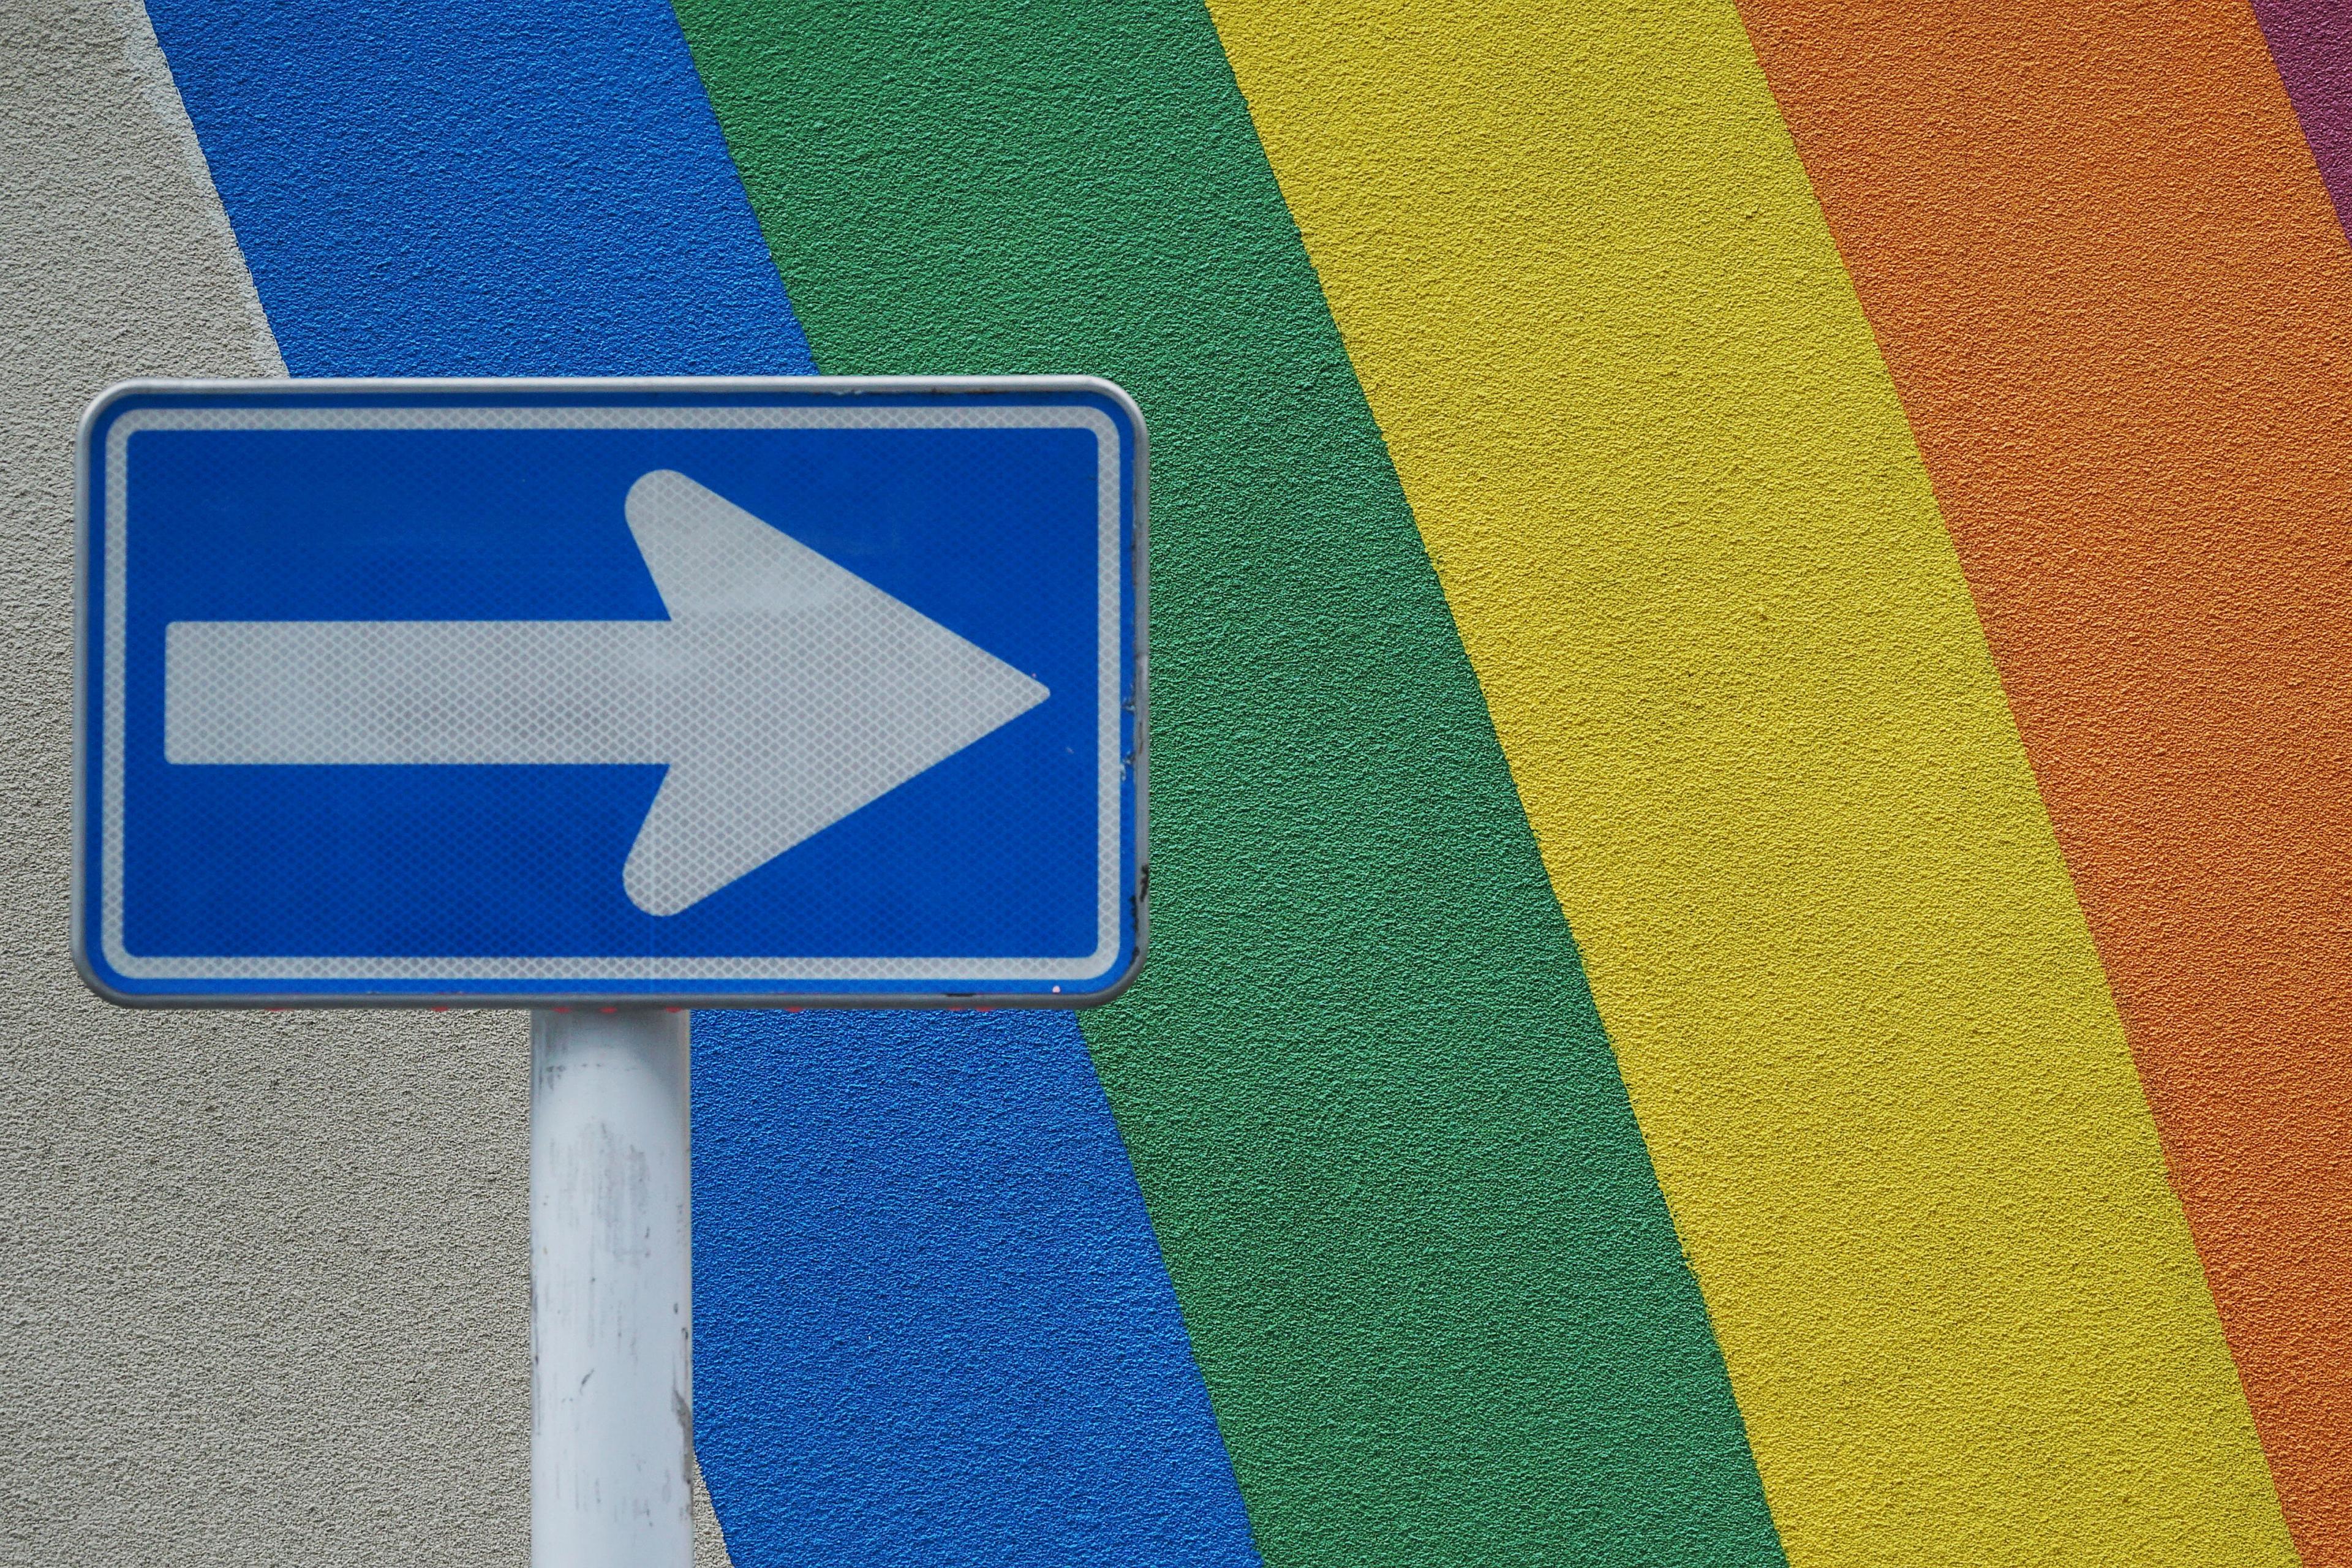 A blue arrow on a sign, against rainbow stripes painted on a wall